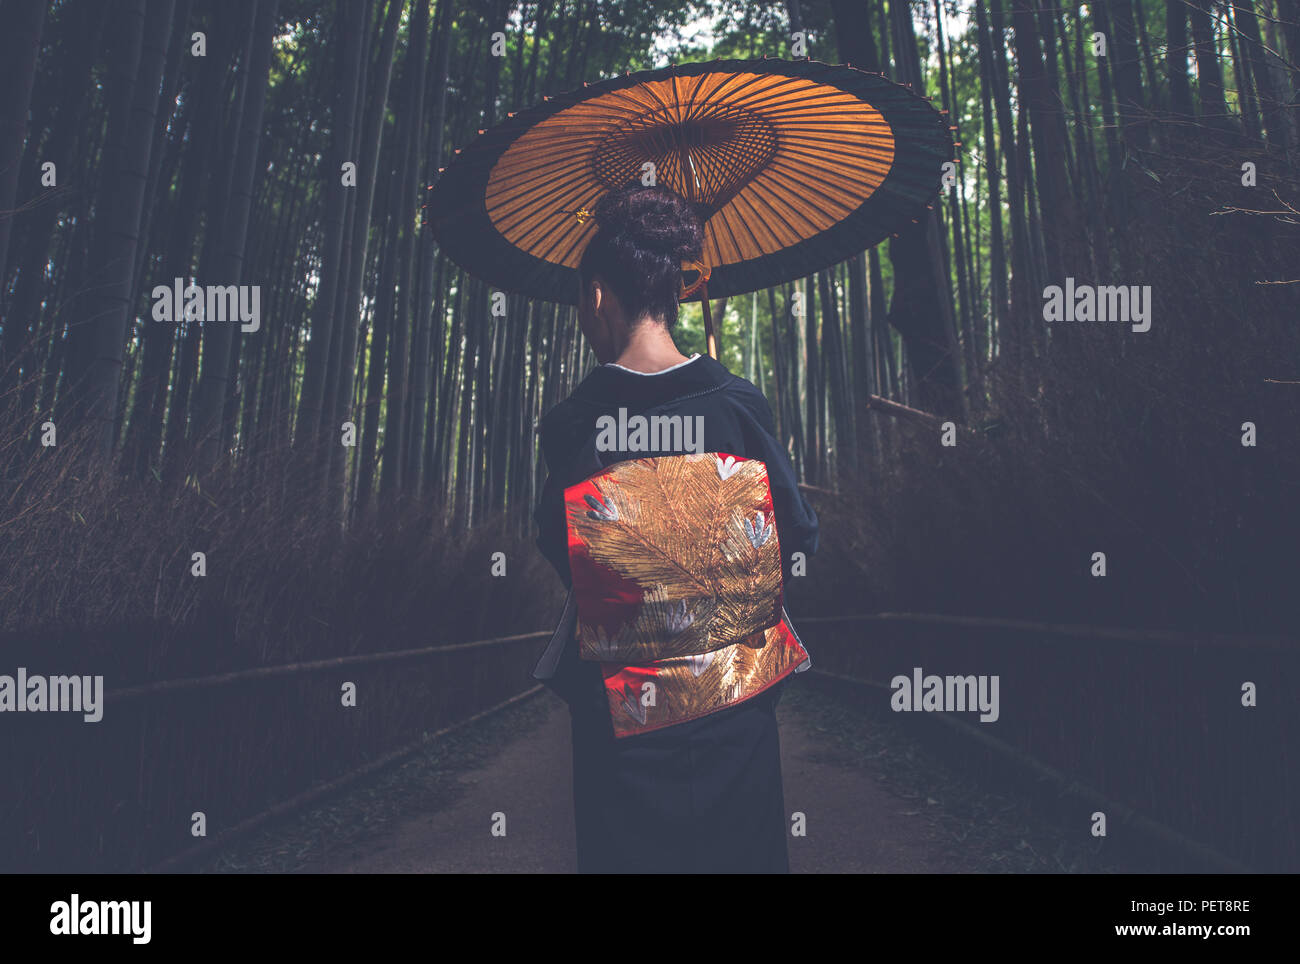 Belle japonaise hauts femme marche dans la forêt de bambous Banque D'Images